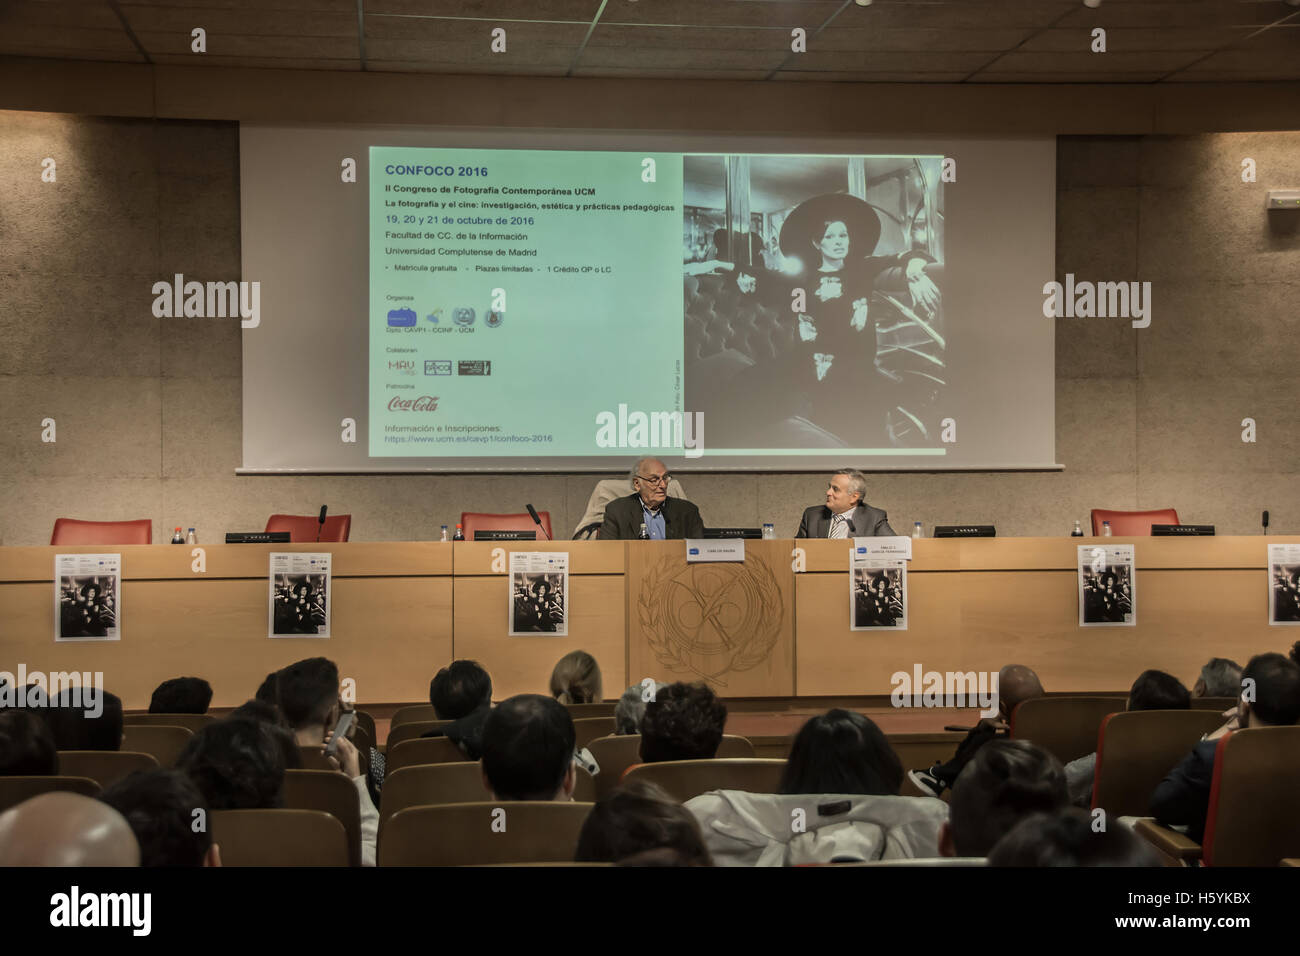 El director de cine Carlos Saura dar una conferencia en la Universidad de Madrid, España, en la conferencia de fotografía 'cine' confoco Foto de stock